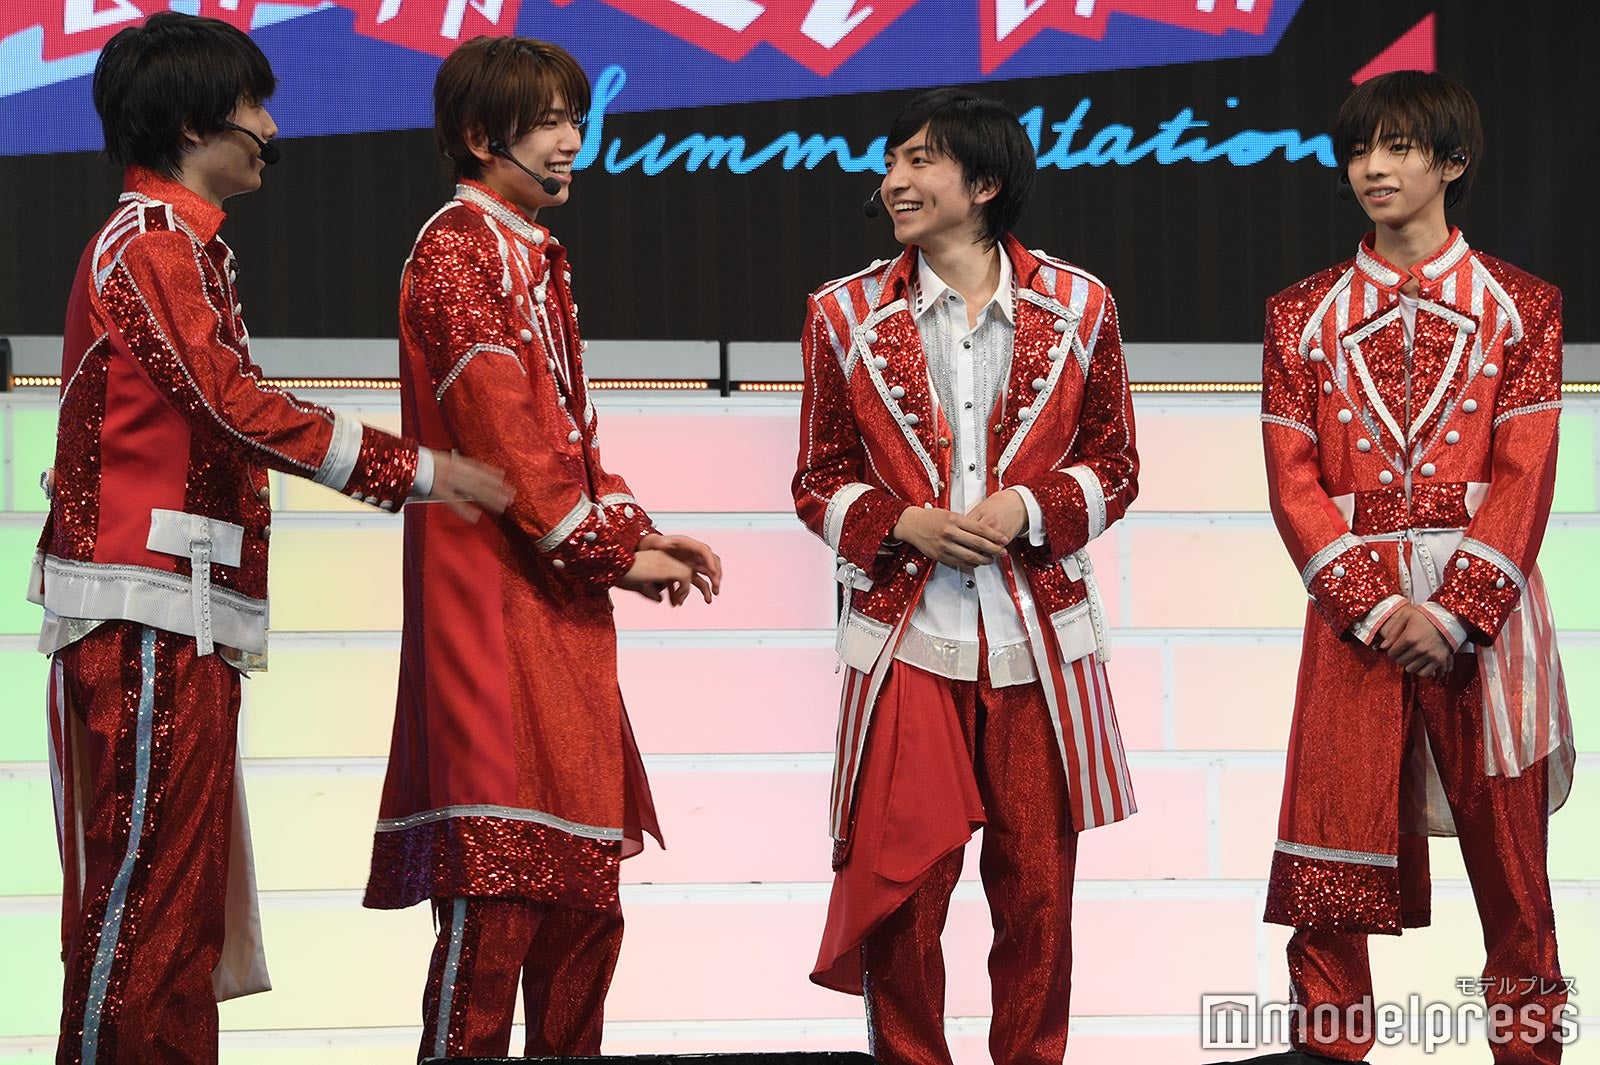 画像3/6) 少年忍者、ジャニーズJr.京セラドーム公演で感じたグループの ...